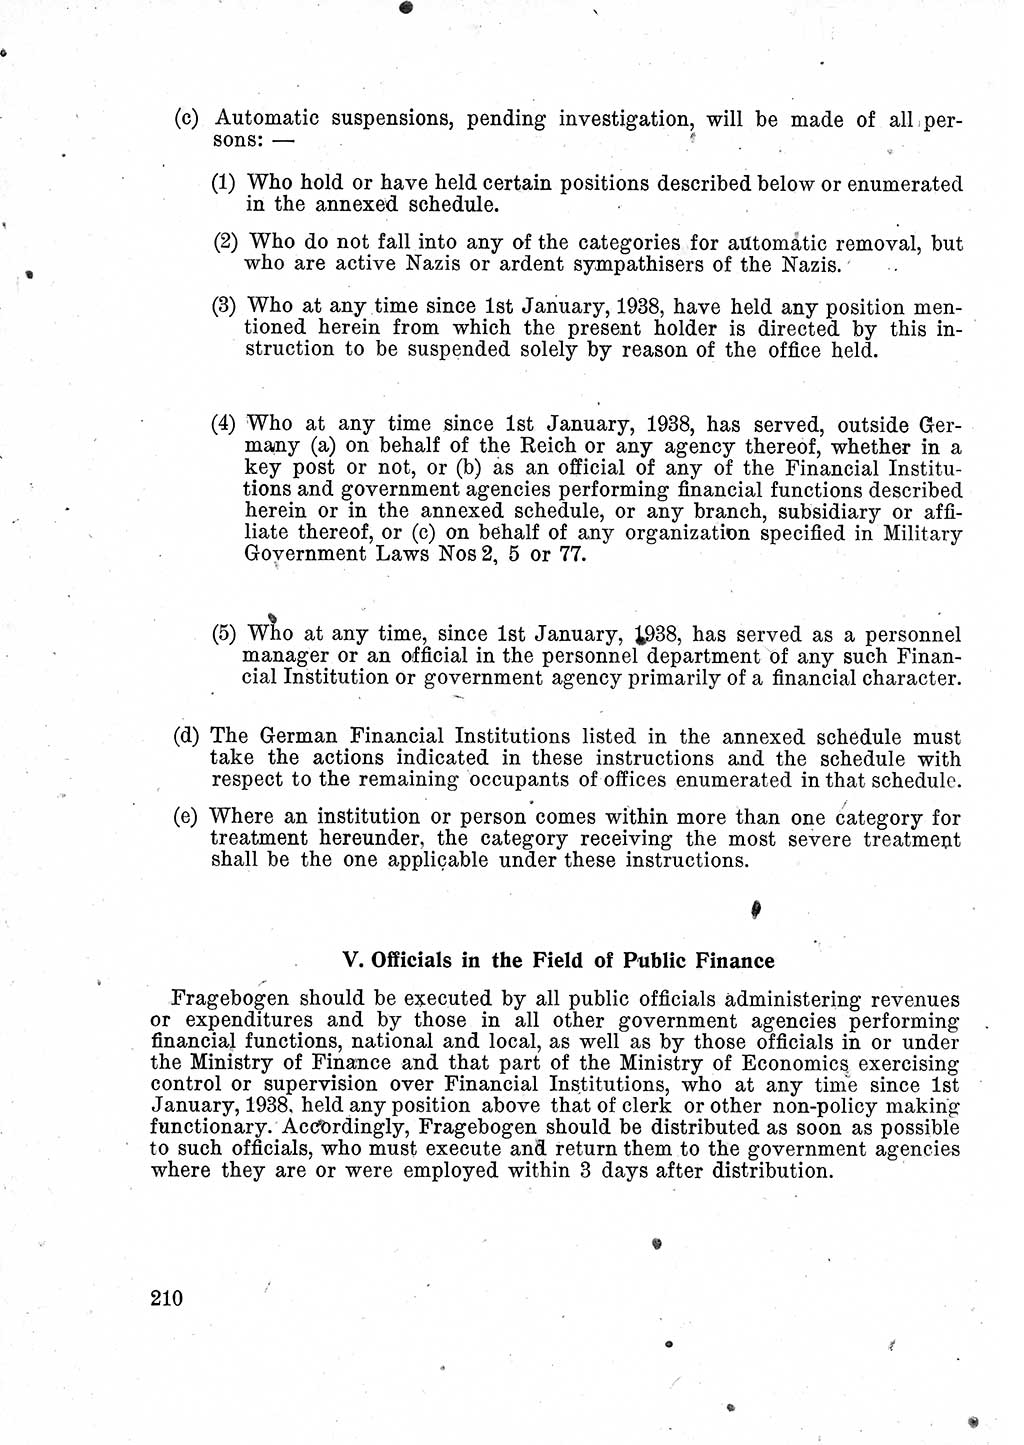 Das Recht der Besatzungsmacht (Deutschland), Proklamationen, Deklerationen, Verordnungen, Gesetze und Bekanntmachungen 1947, Seite 210 (R. Bes. Dtl. 1947, S. 210)